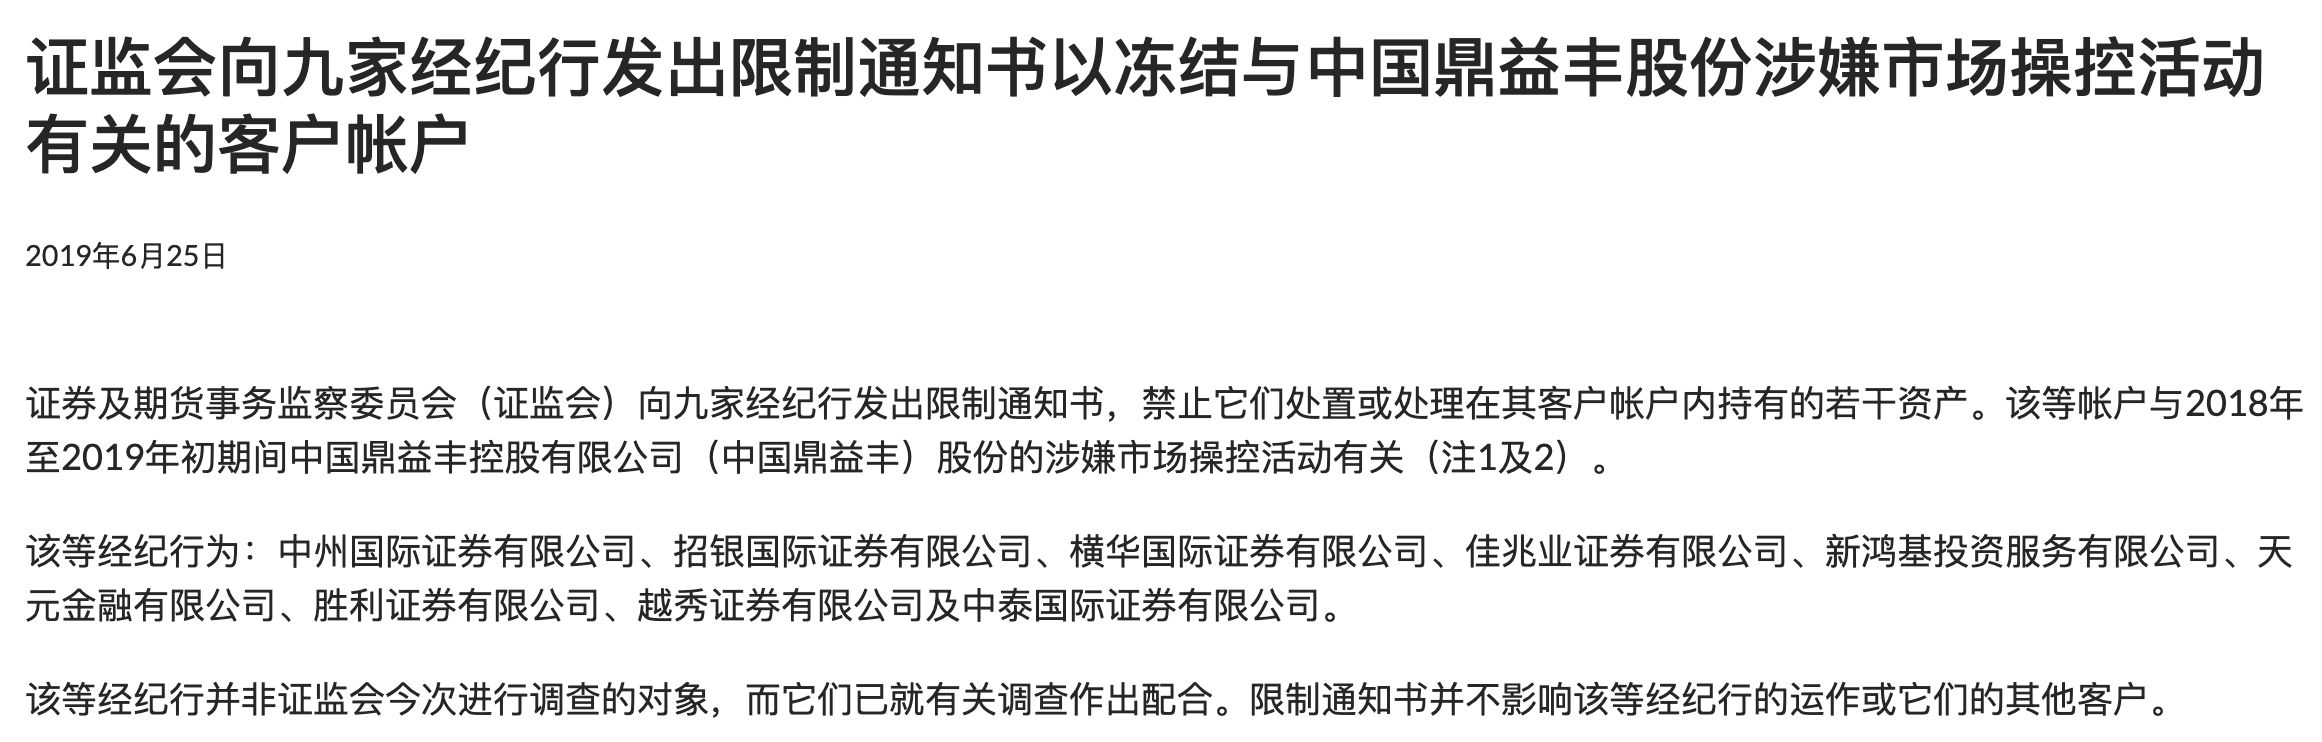 图片来自香港证券及期货事务监察委员会官网